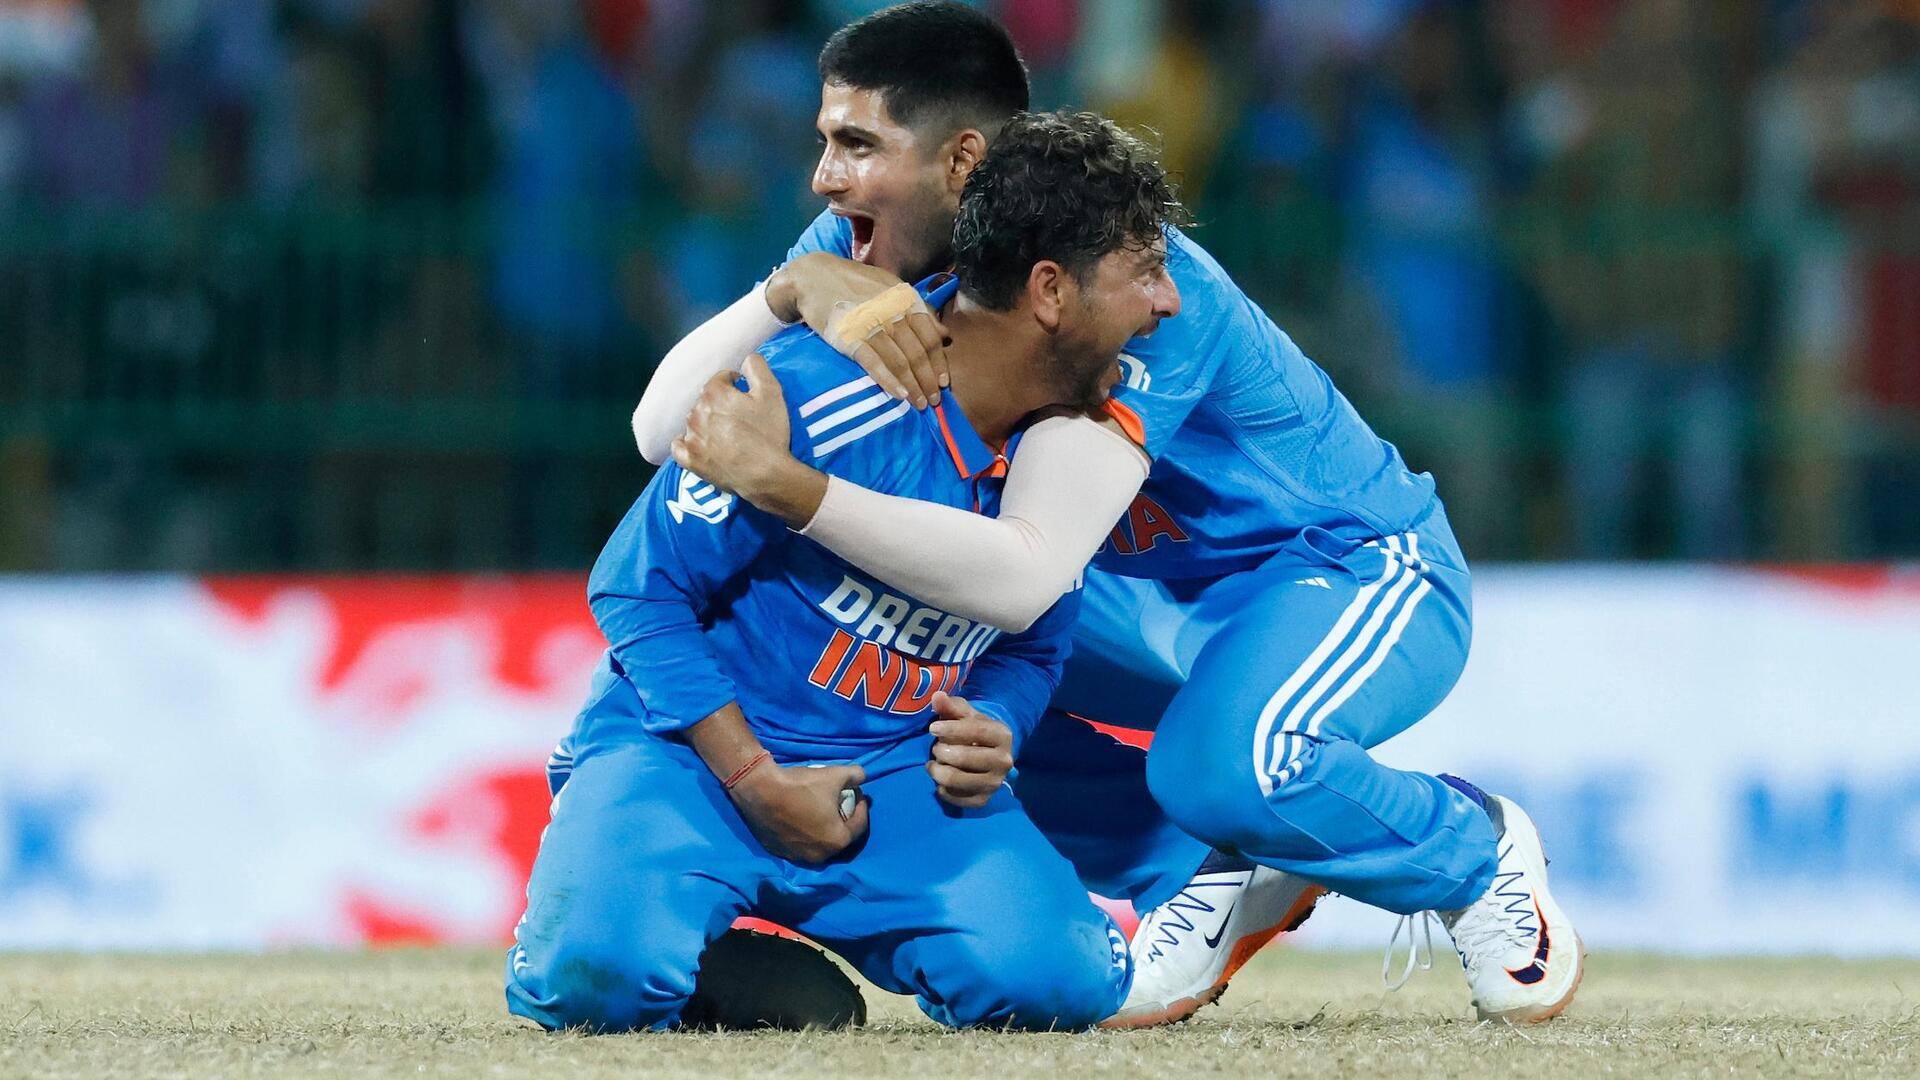 भारत बनाम श्रीलंका: कुलदीप वनडे में दूसरे सबसे तेज 150 विकेट लेने वाले भारतीय गेंदबाज बने